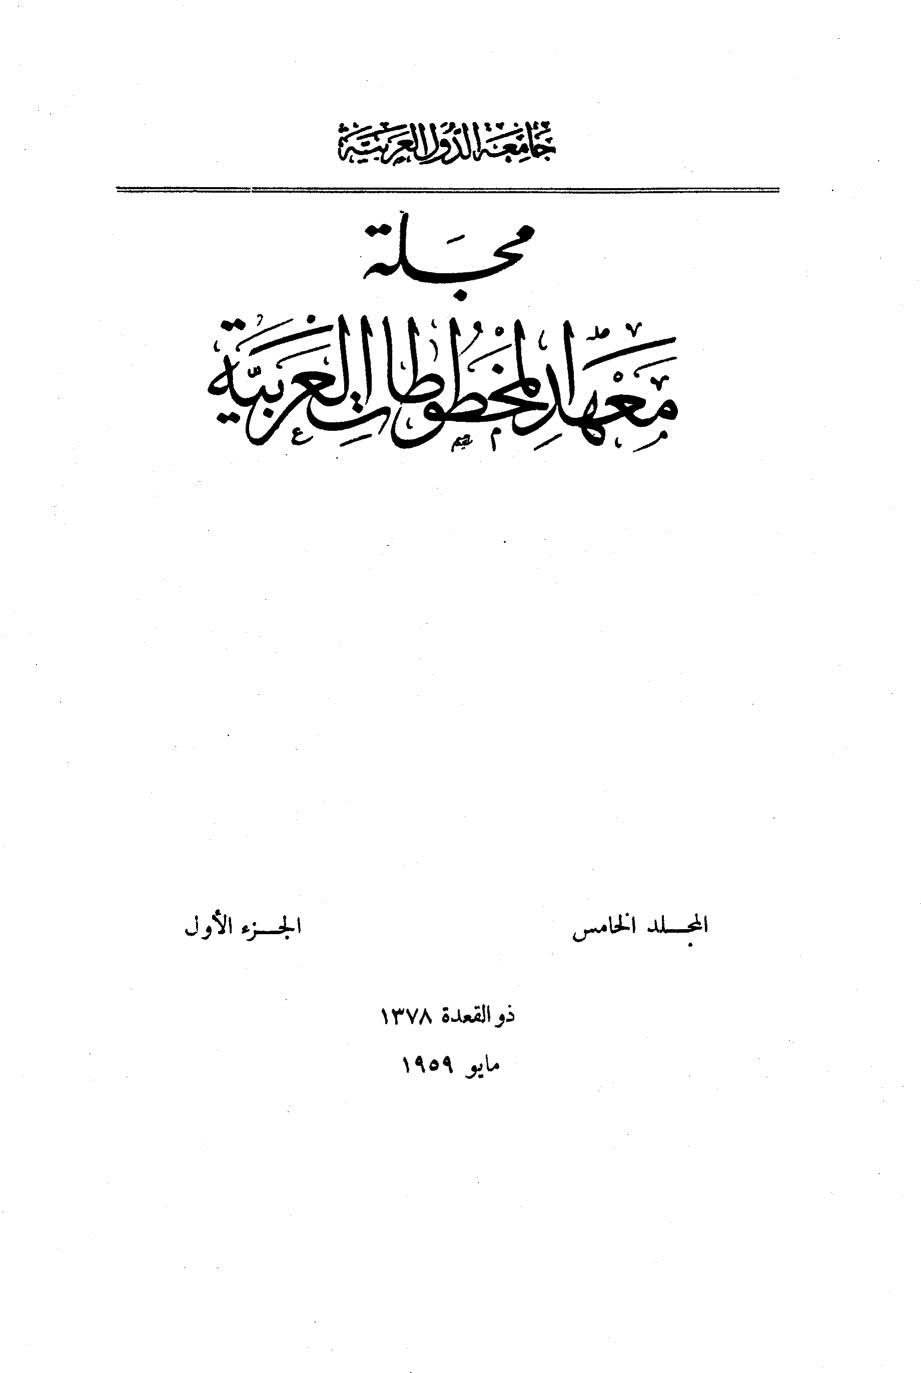 برنامج شيوخ ابن الفخار الرعيني _ مقالة في مجلة معهد المخطوطات العربية